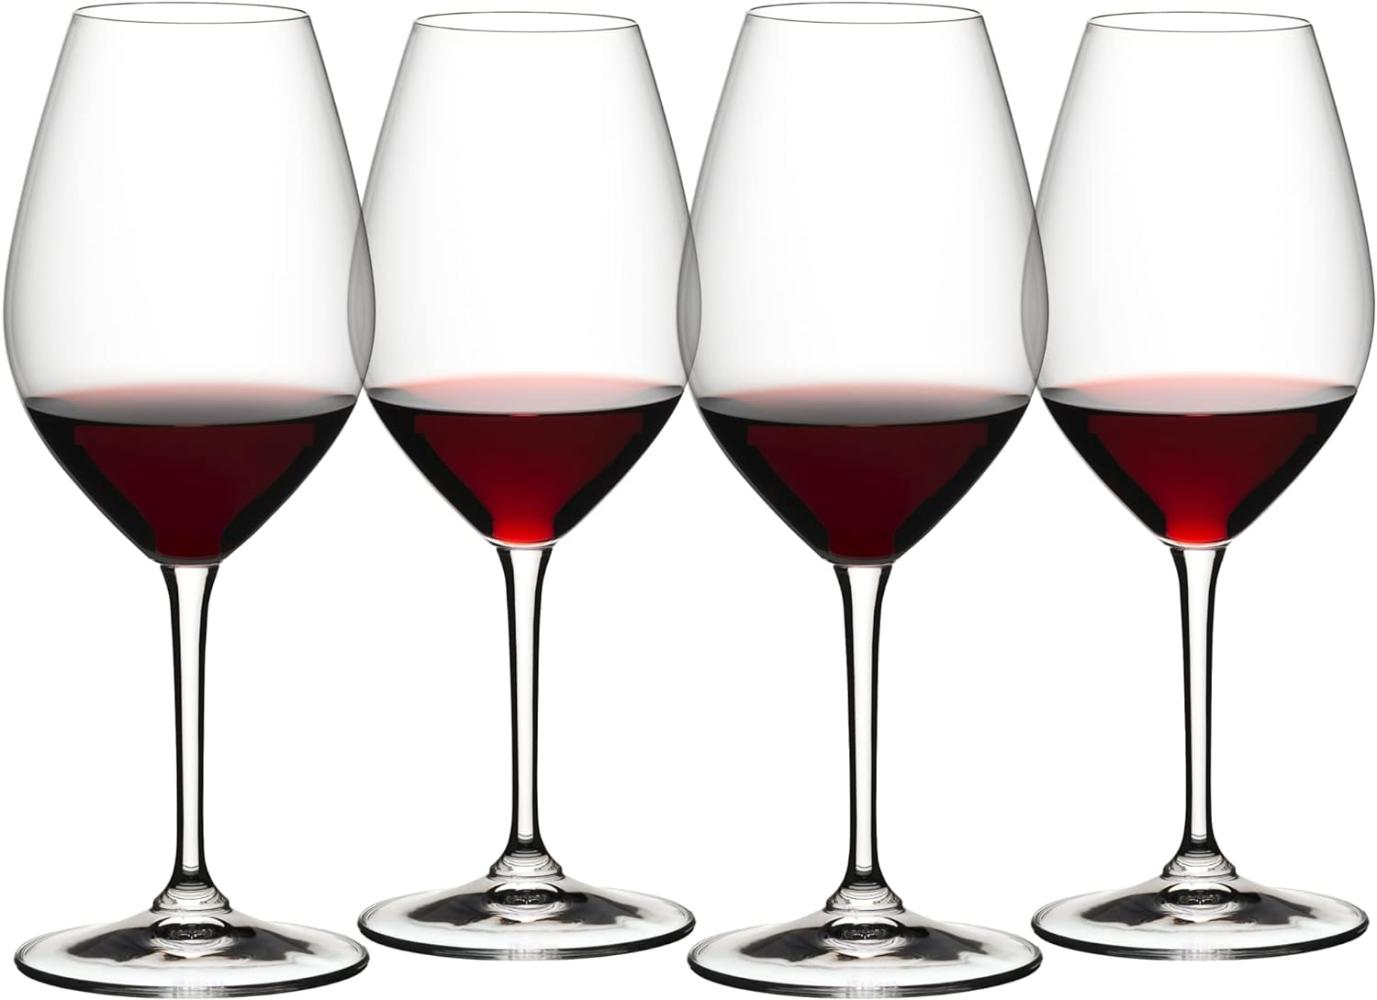 Riedel Wine Friendly Red Wine 002, 4er Set, Rotweinglas, Rotwein Glas, Weinglas, Kristallglas, 667 ml, 6422/02-4 Bild 1